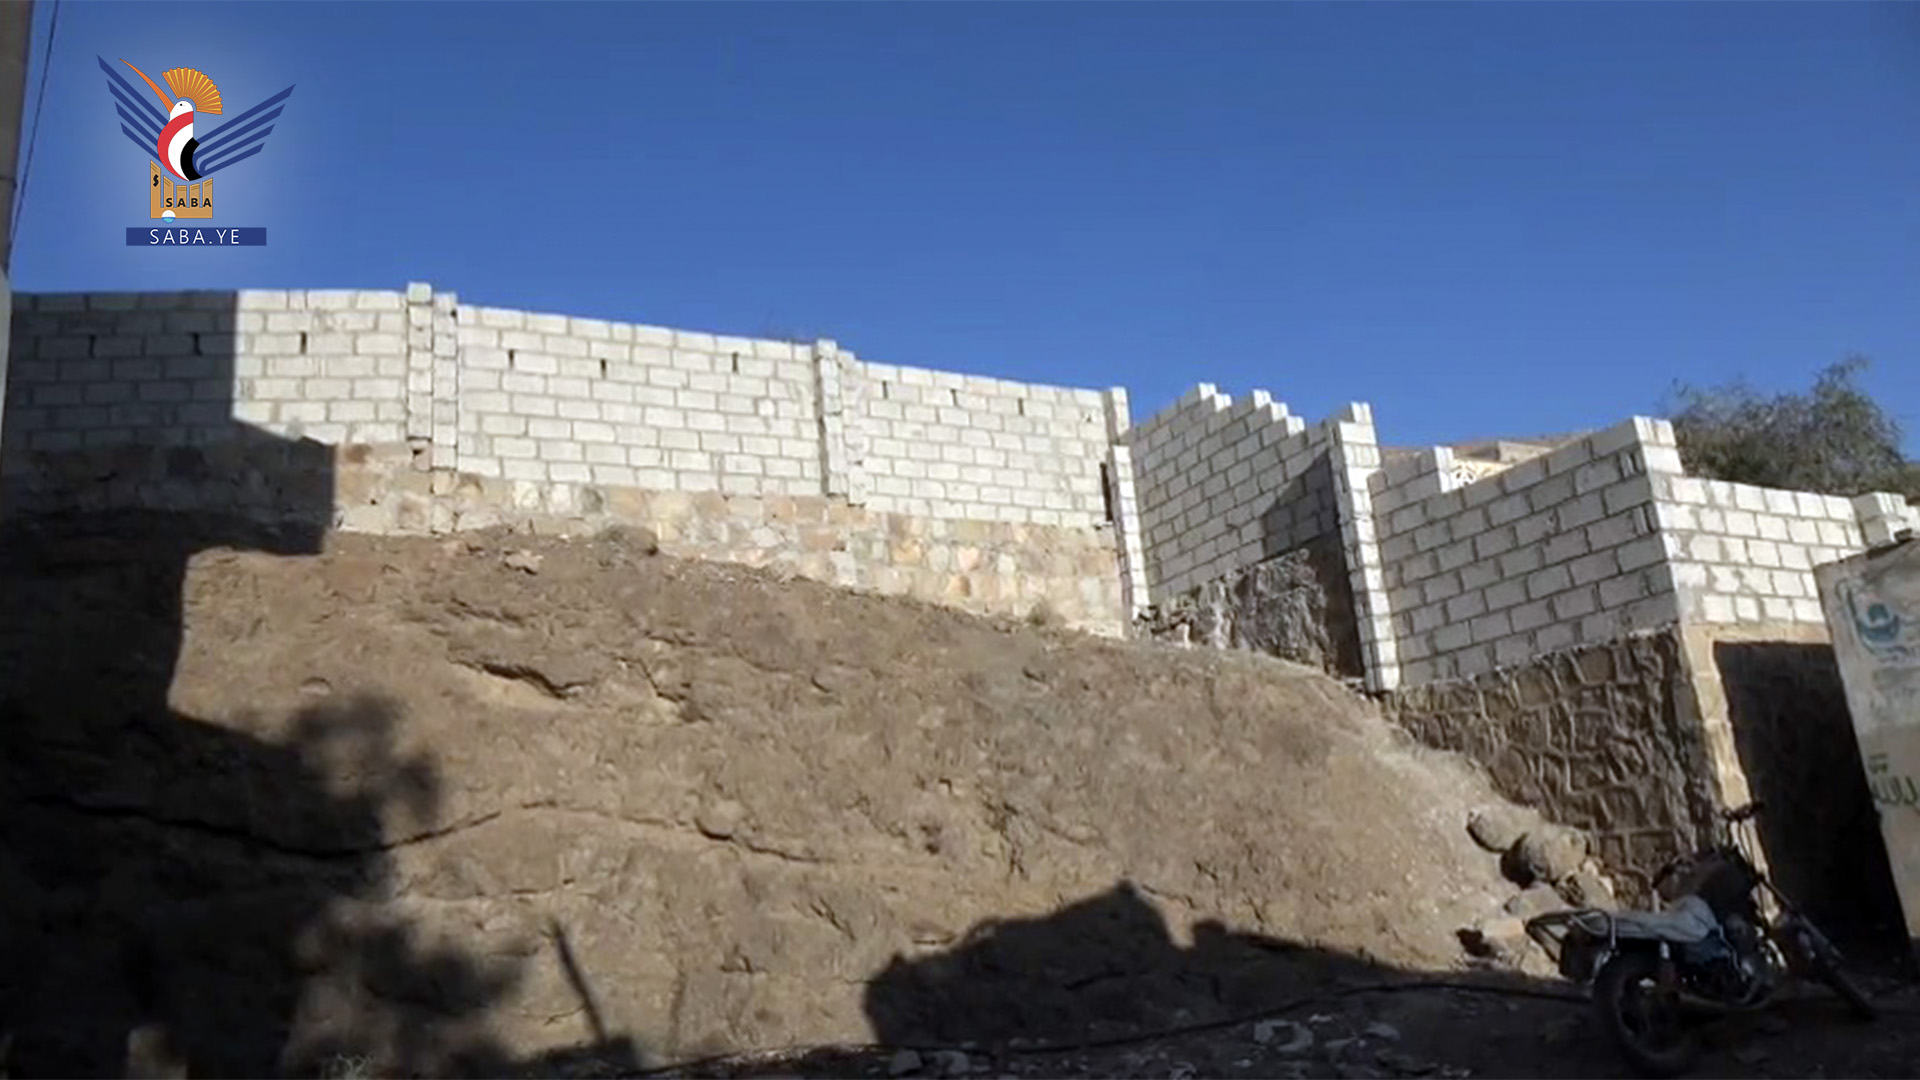 الانتهاء من بناء سور مدرسة القرآن بمديرية الطيال في صنعاء بمبادرة مجتمعية